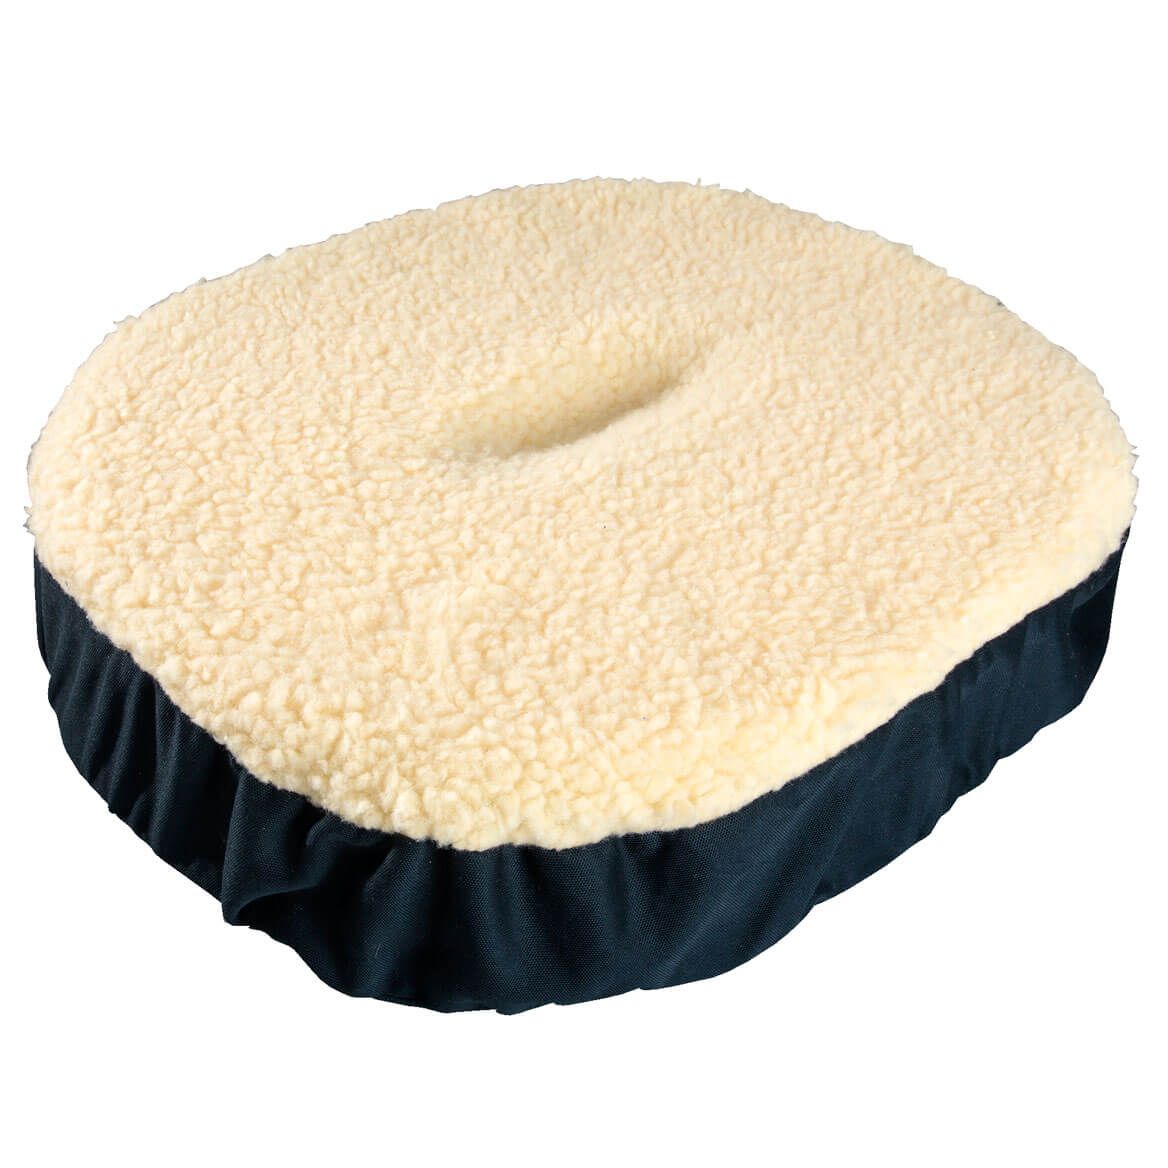 Donut Gel Cushion + '-' + 356548